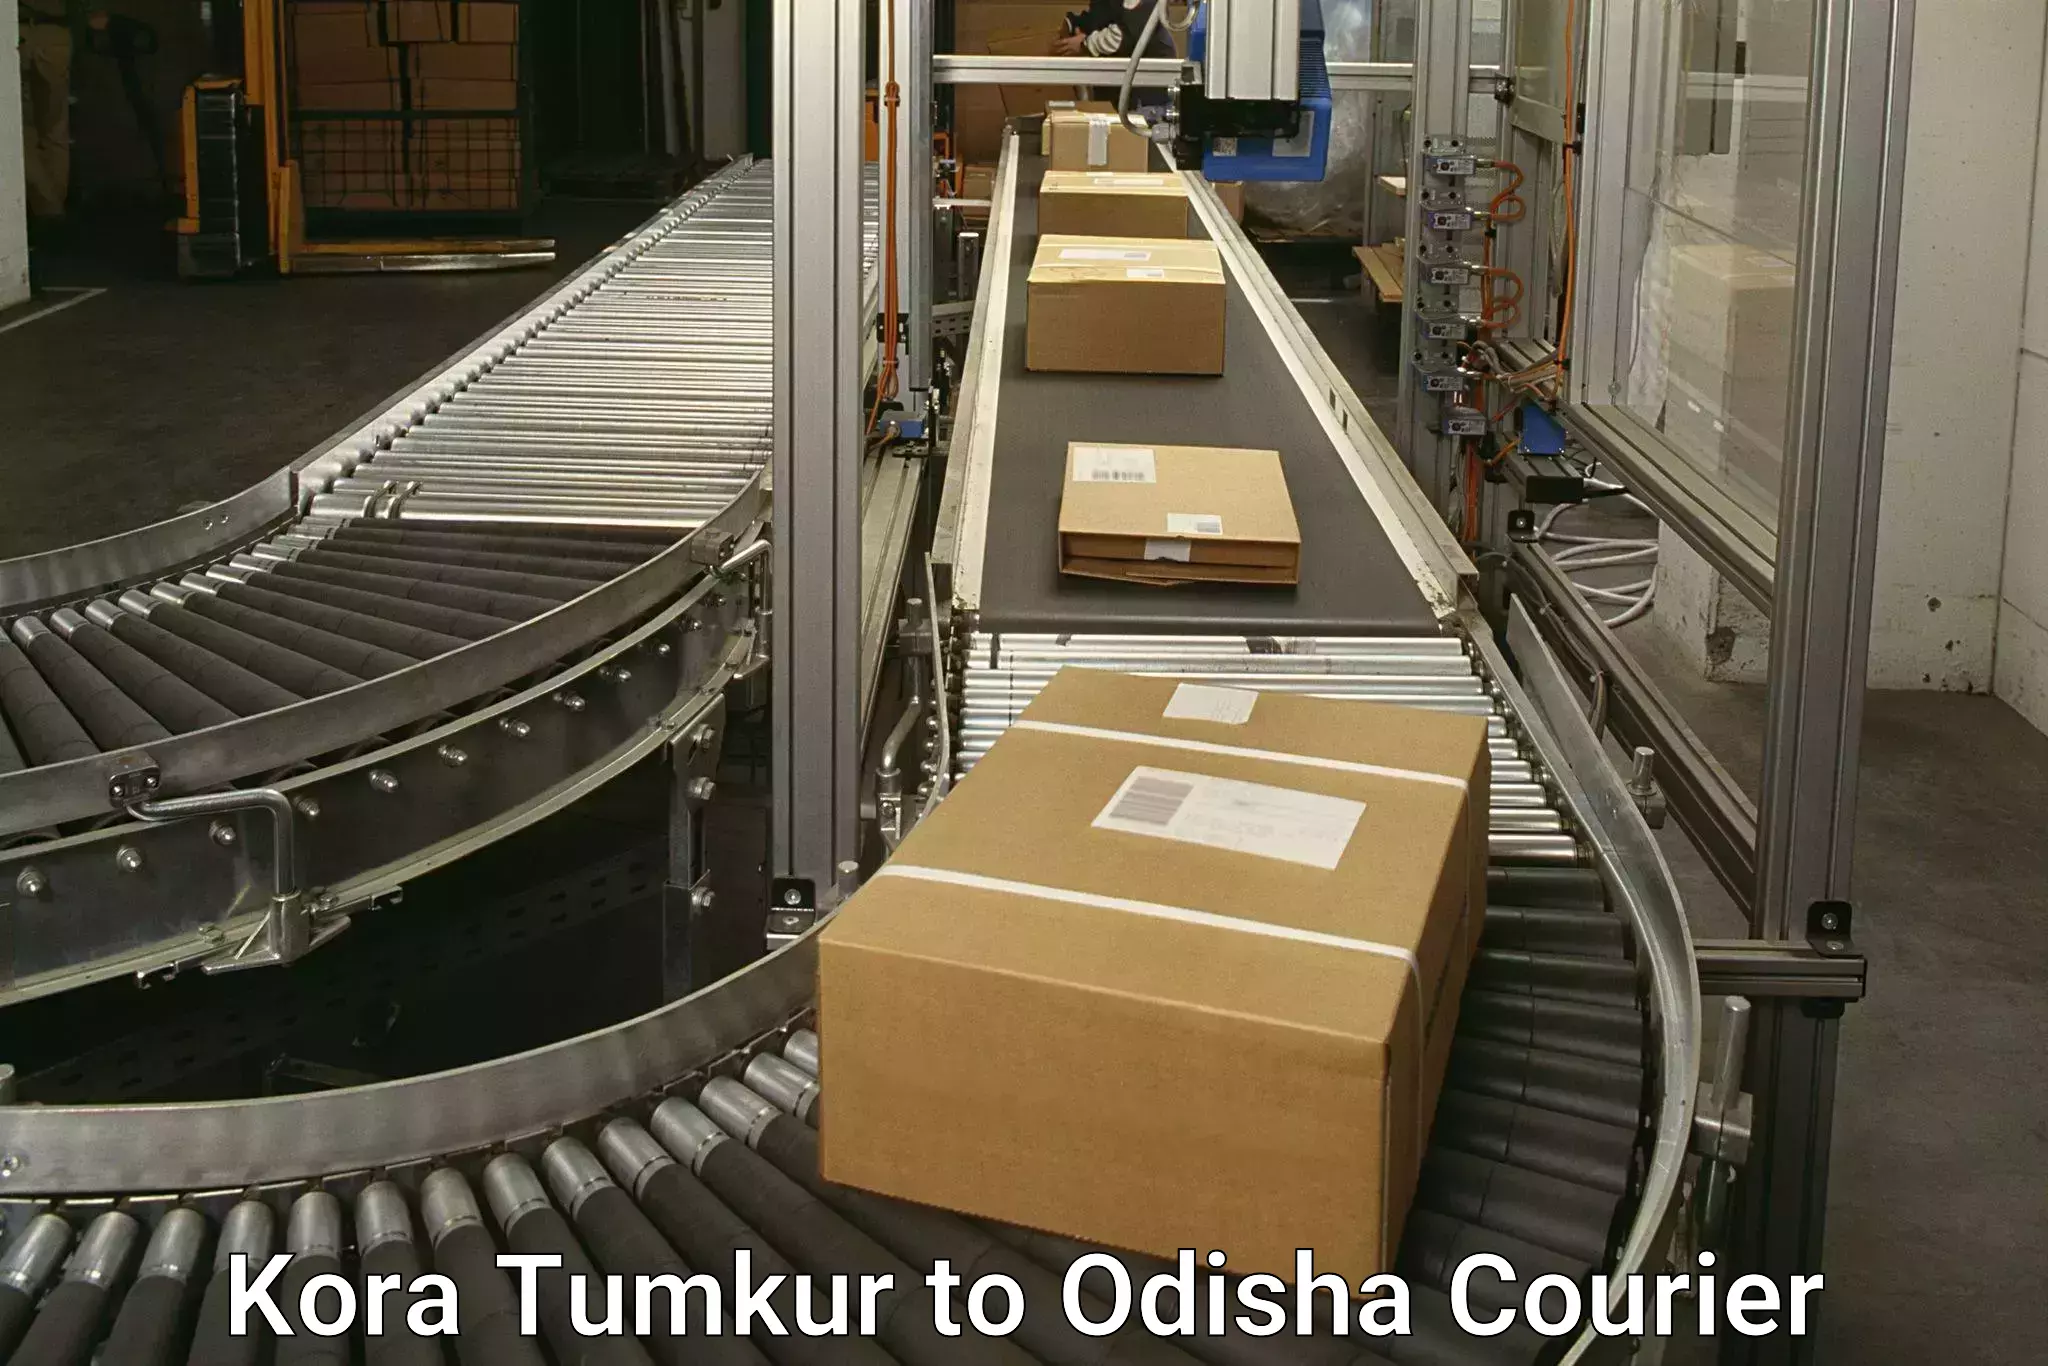 Full-service courier options Kora Tumkur to Saintala